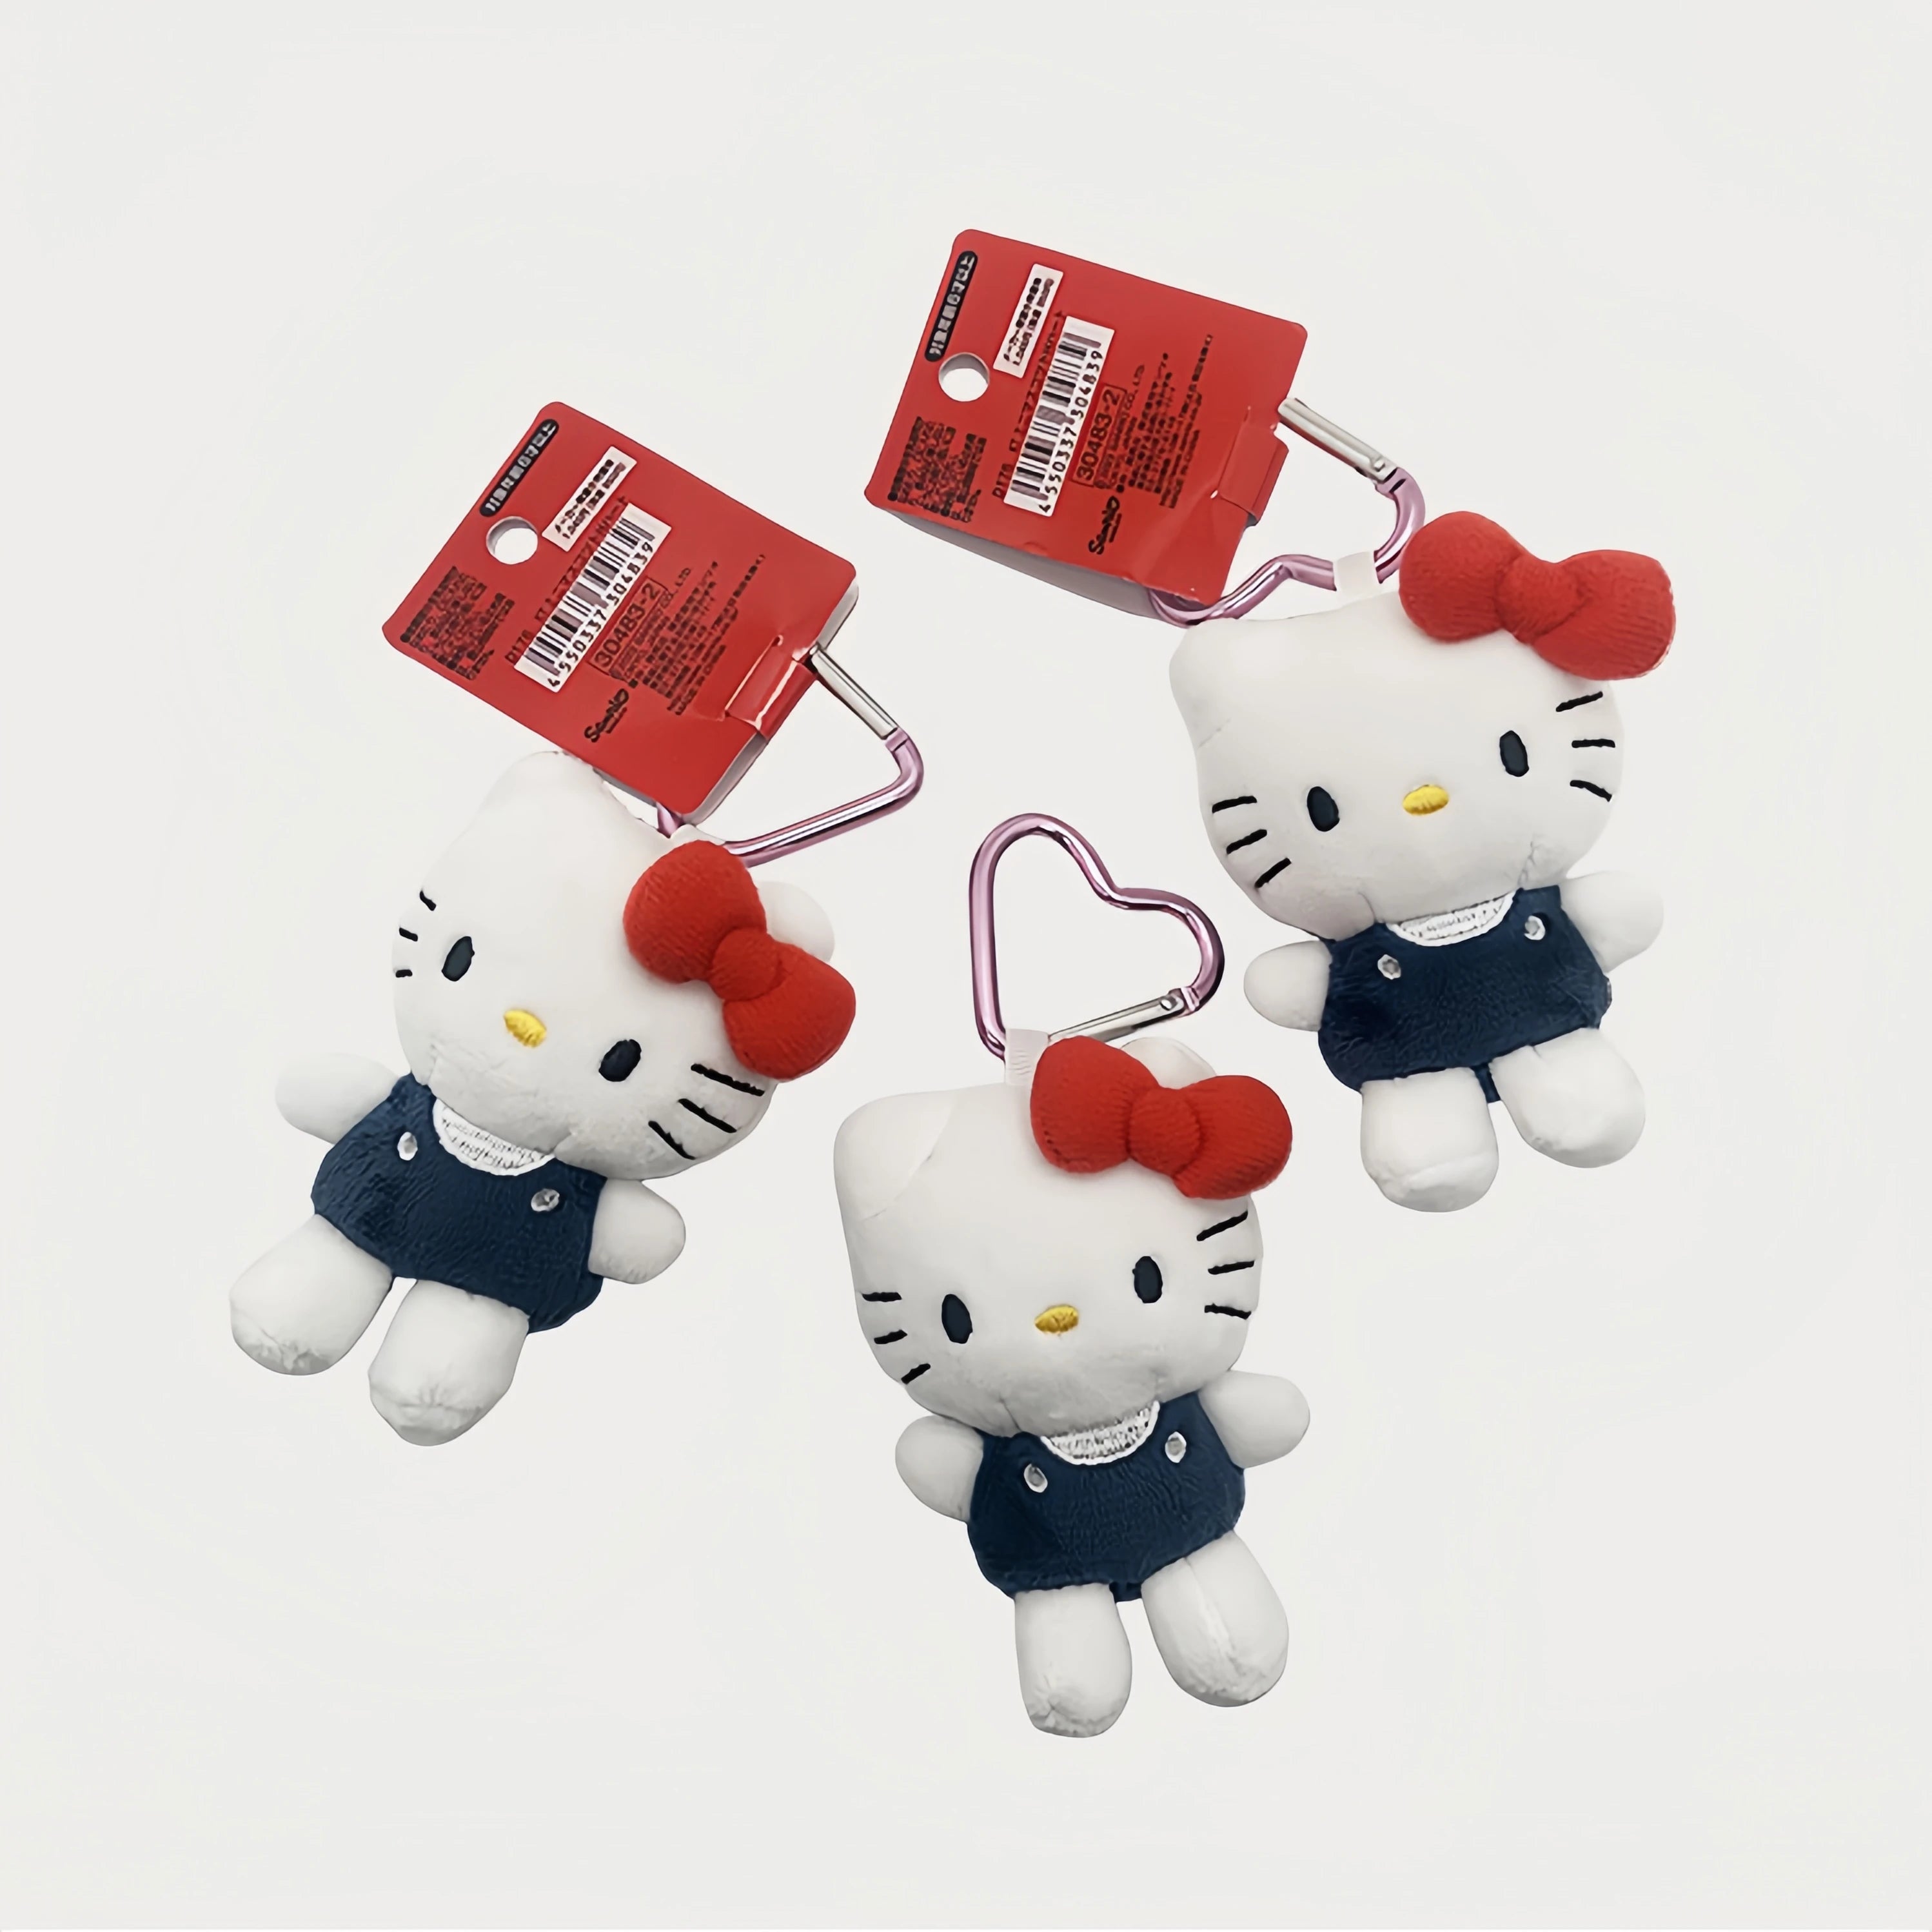 9cm Cute Love Hello Kitty Key Chain Bag Pendant Cute Stuffed Hello Kitty Plush